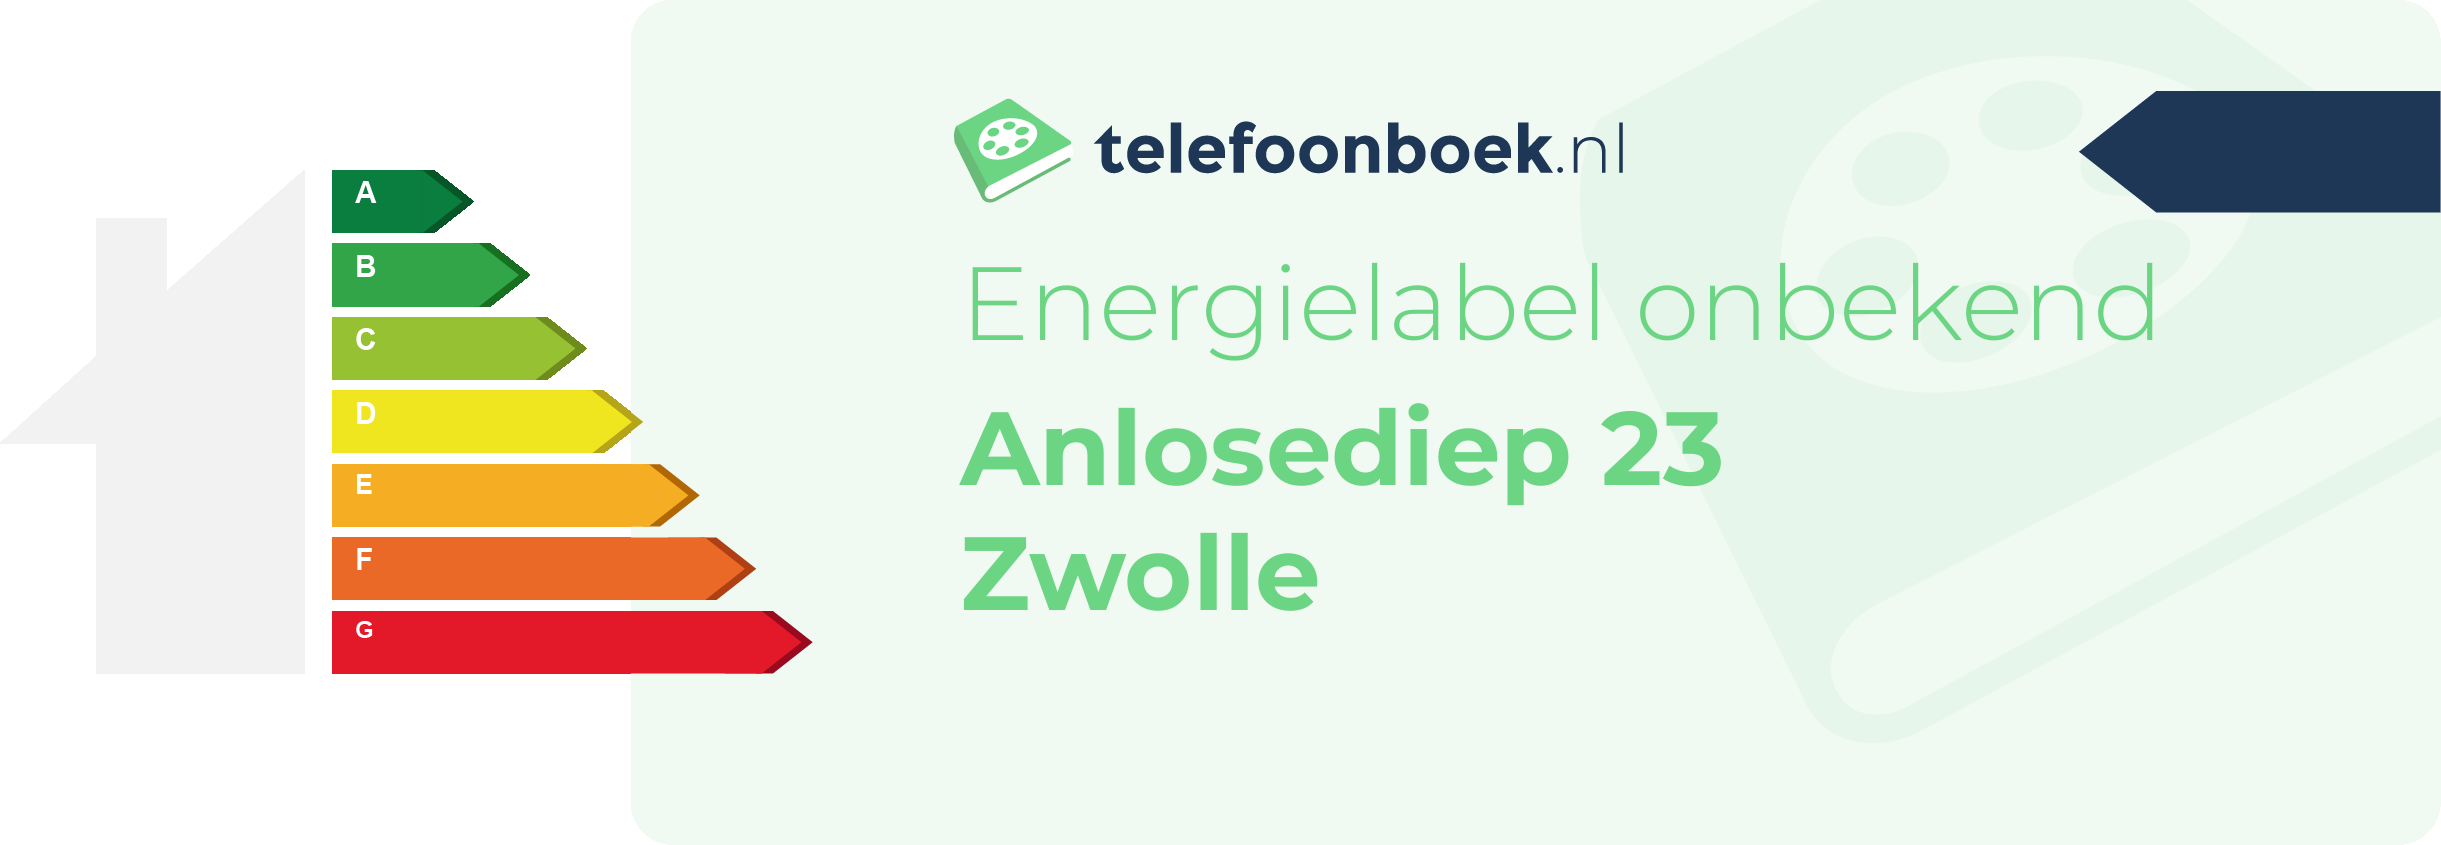 Energielabel Anlosediep 23 Zwolle